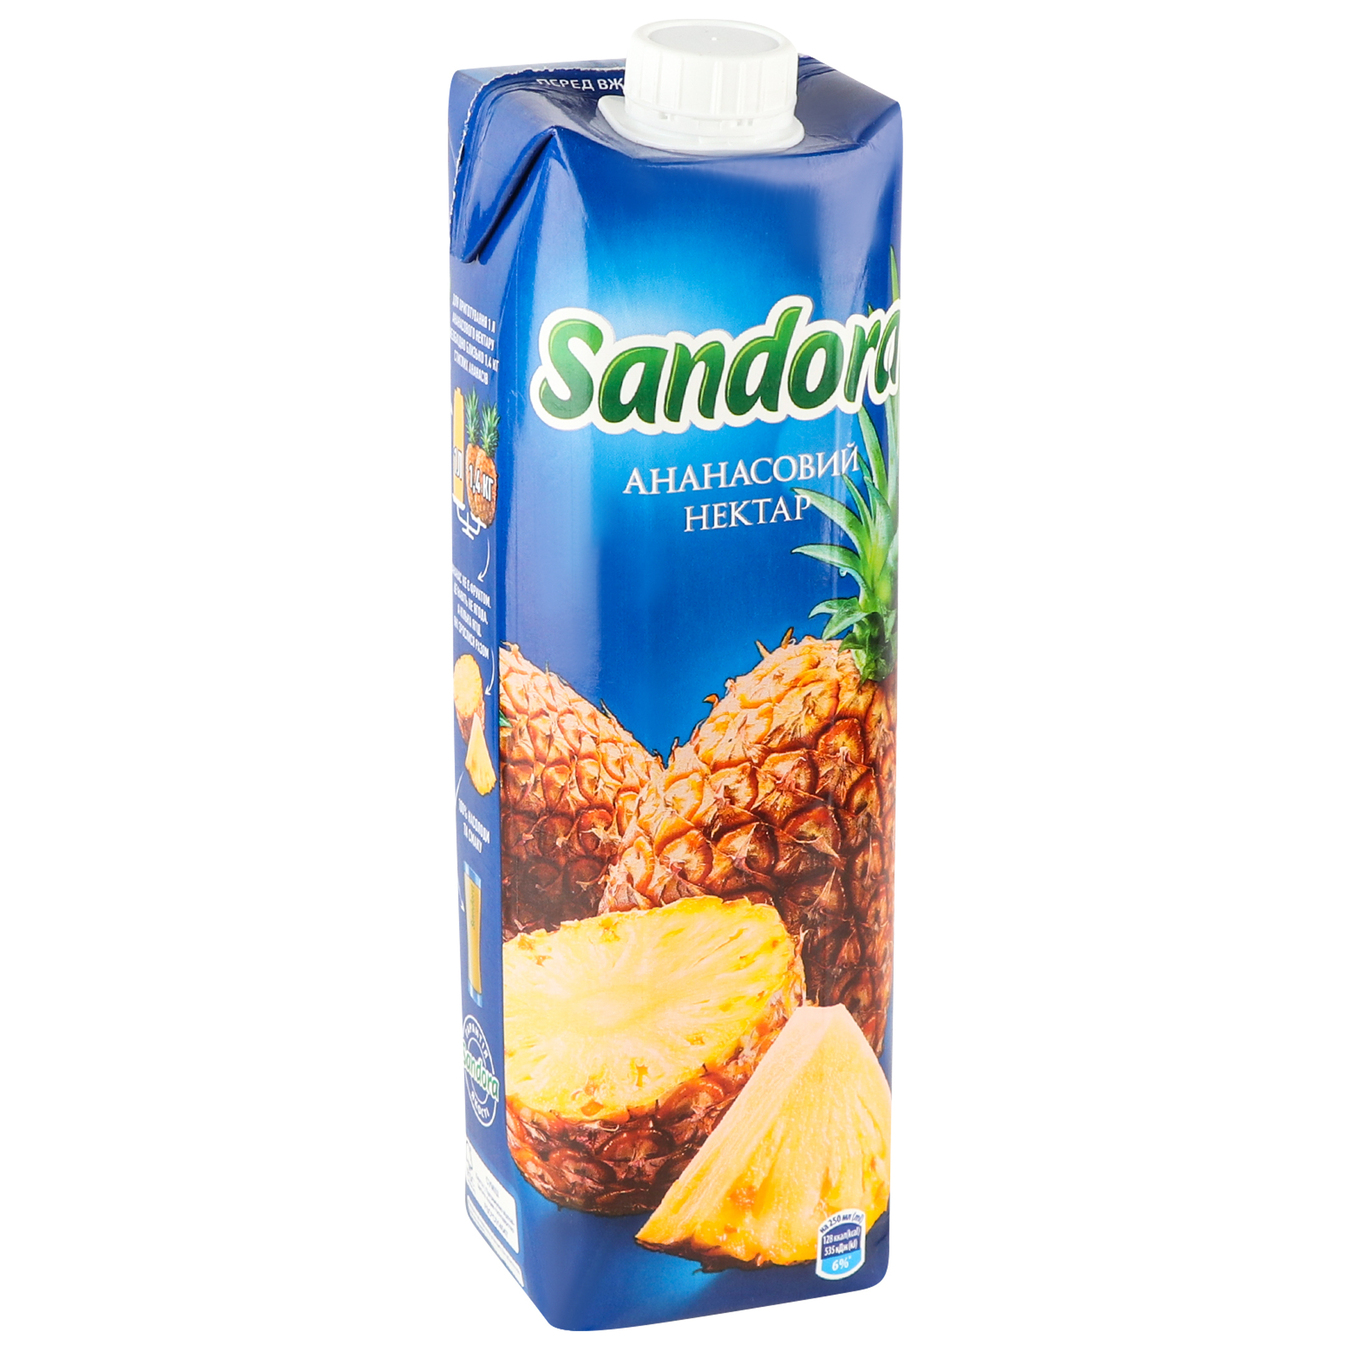 Sandora Pineapple Nectar 0,95l 3